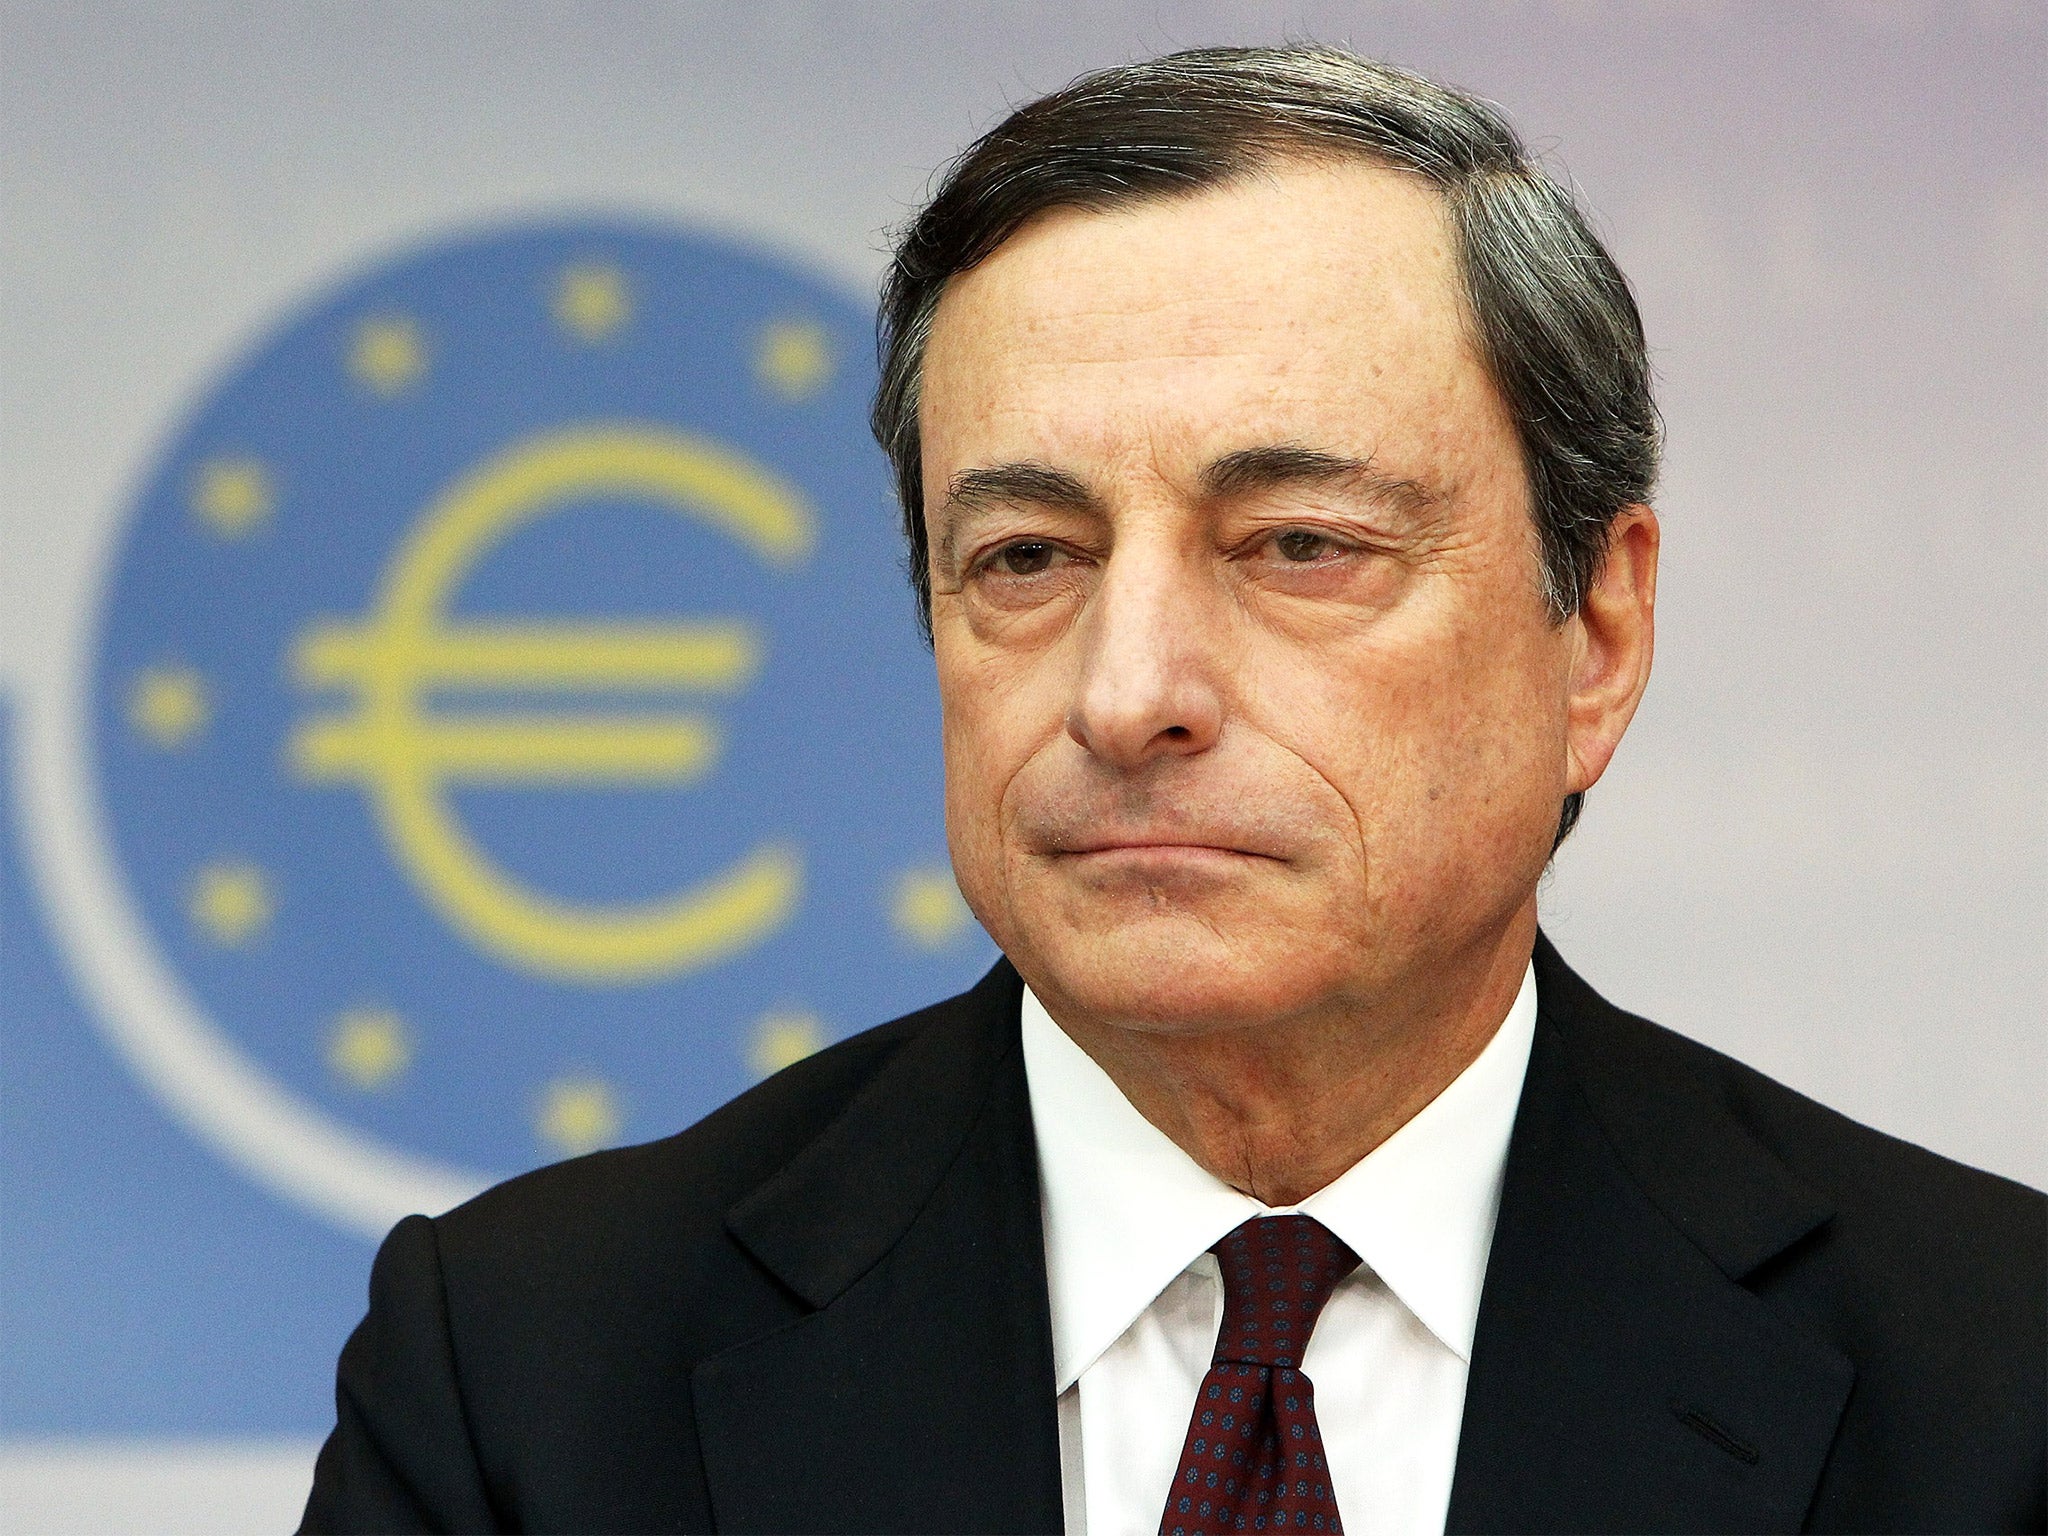 Economists believe Draghi could launch a €550 million (£419 million) programme